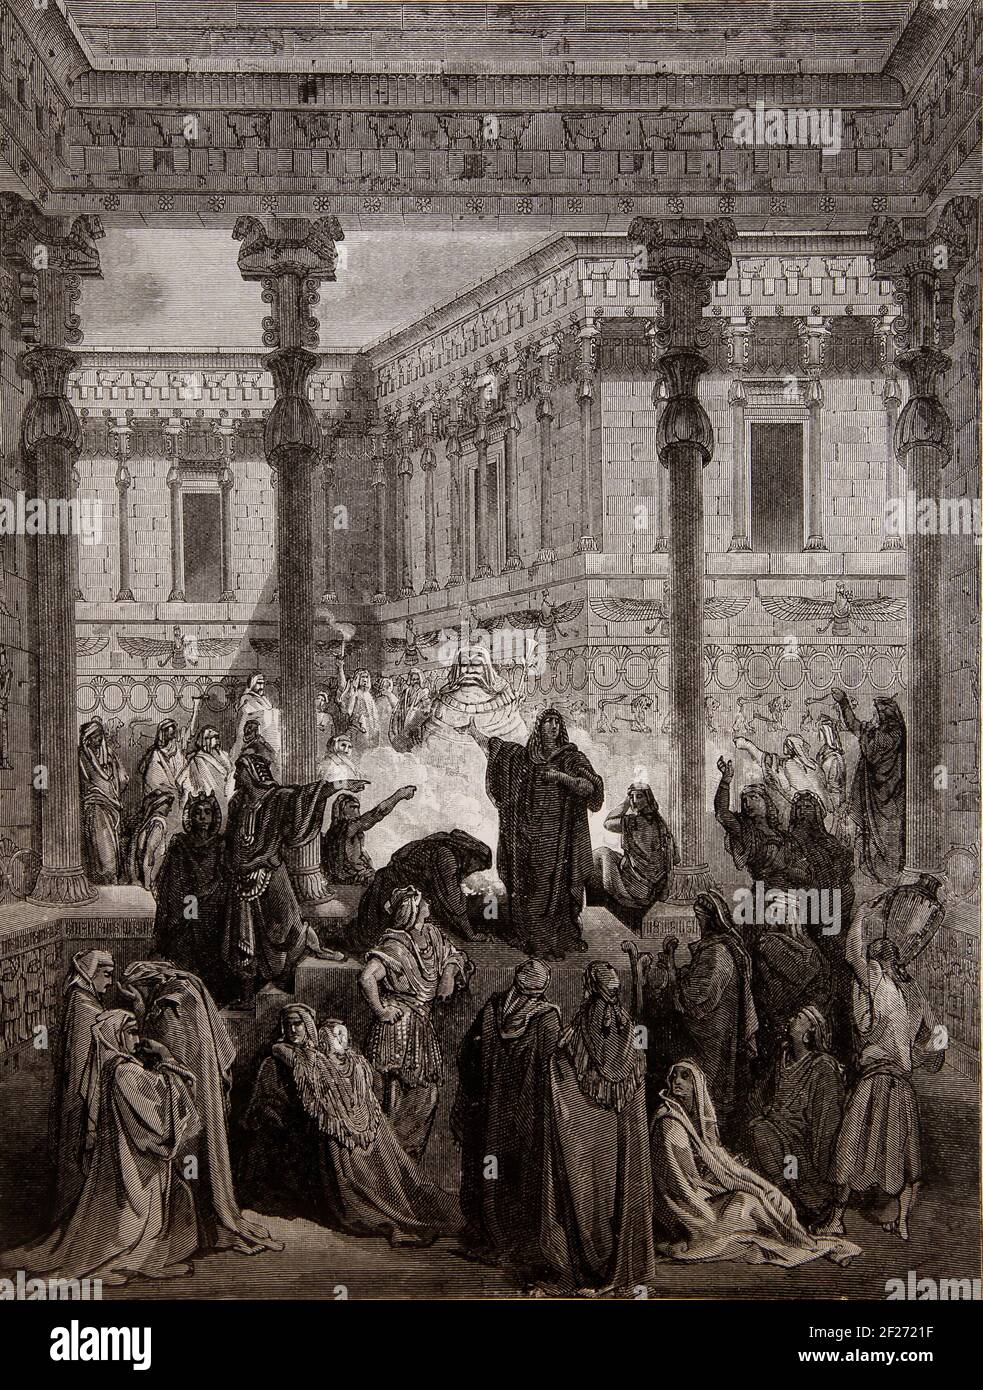 Bibelgeschichte Illustration von Daniel, der die Priester von Bel verwirrt - zeigt, dass der Idol Bel kein Lebensunterhalt war Gott Stockfoto